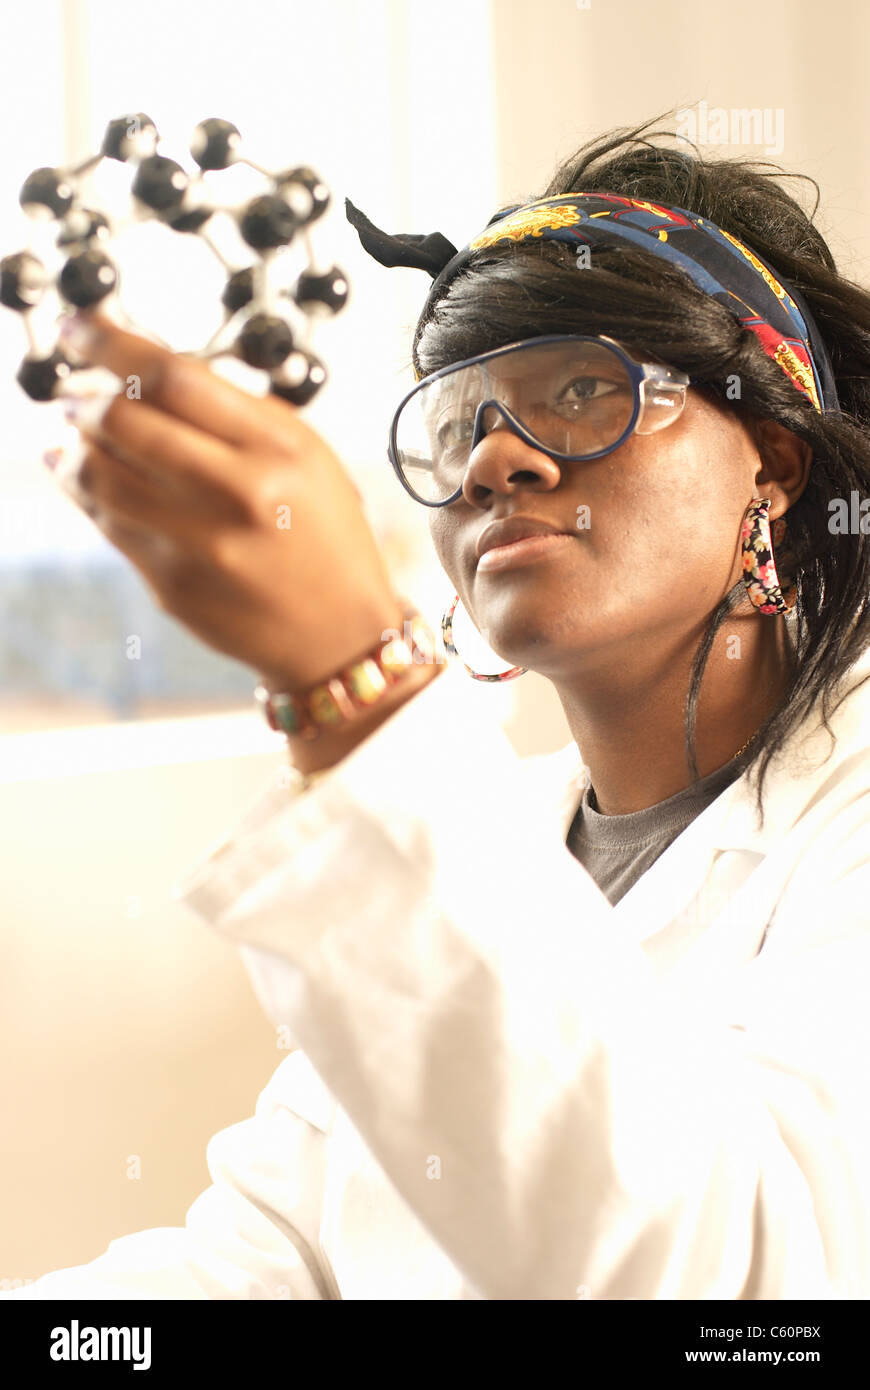 Scientist examining molecular model Stock Photo